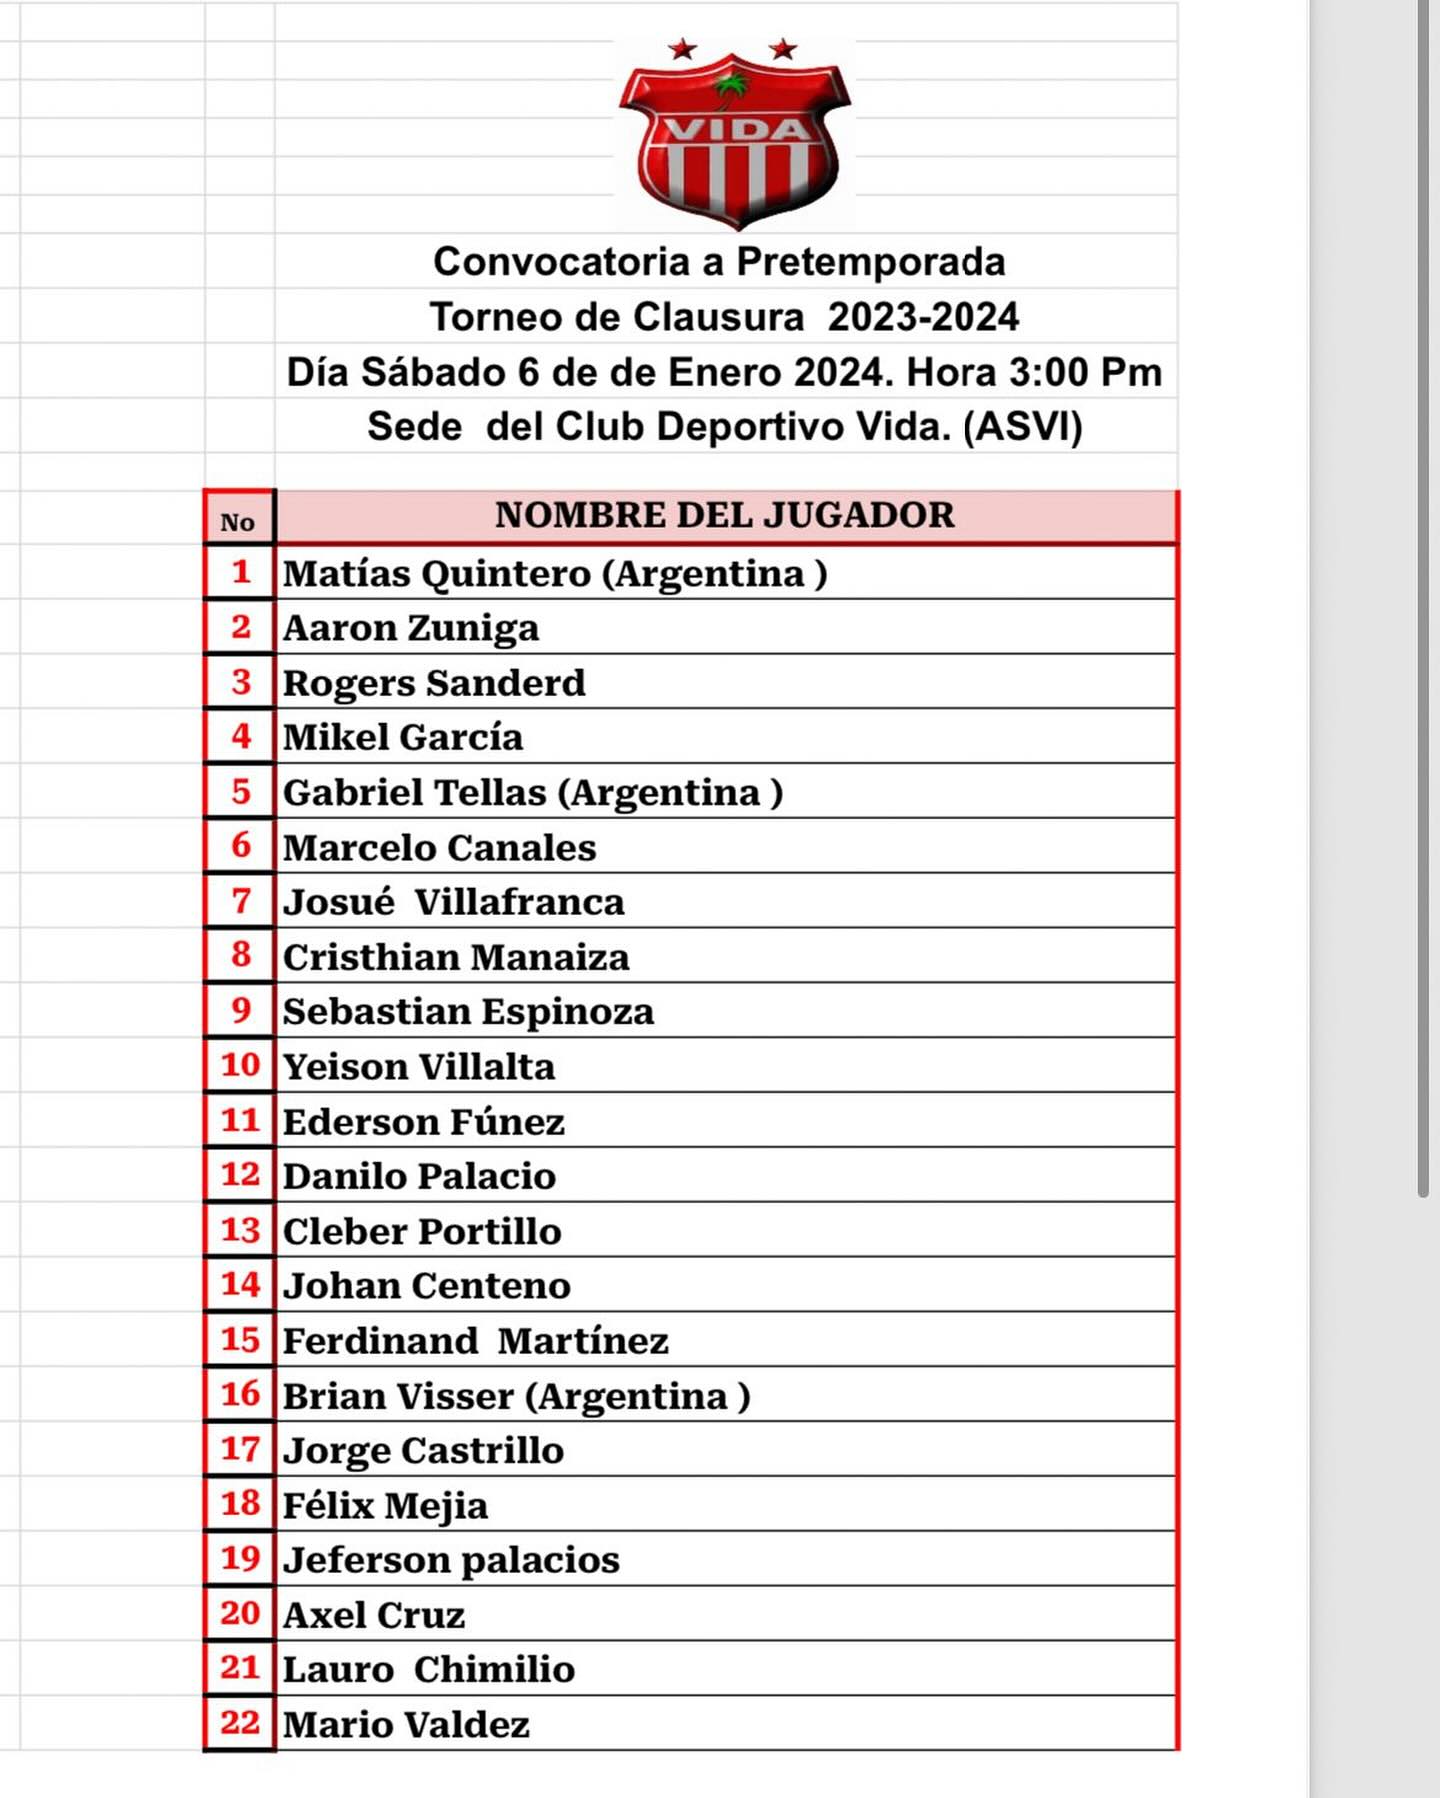 Lista de jugadores convocados por el Vida para los trabajos de pretemporada.